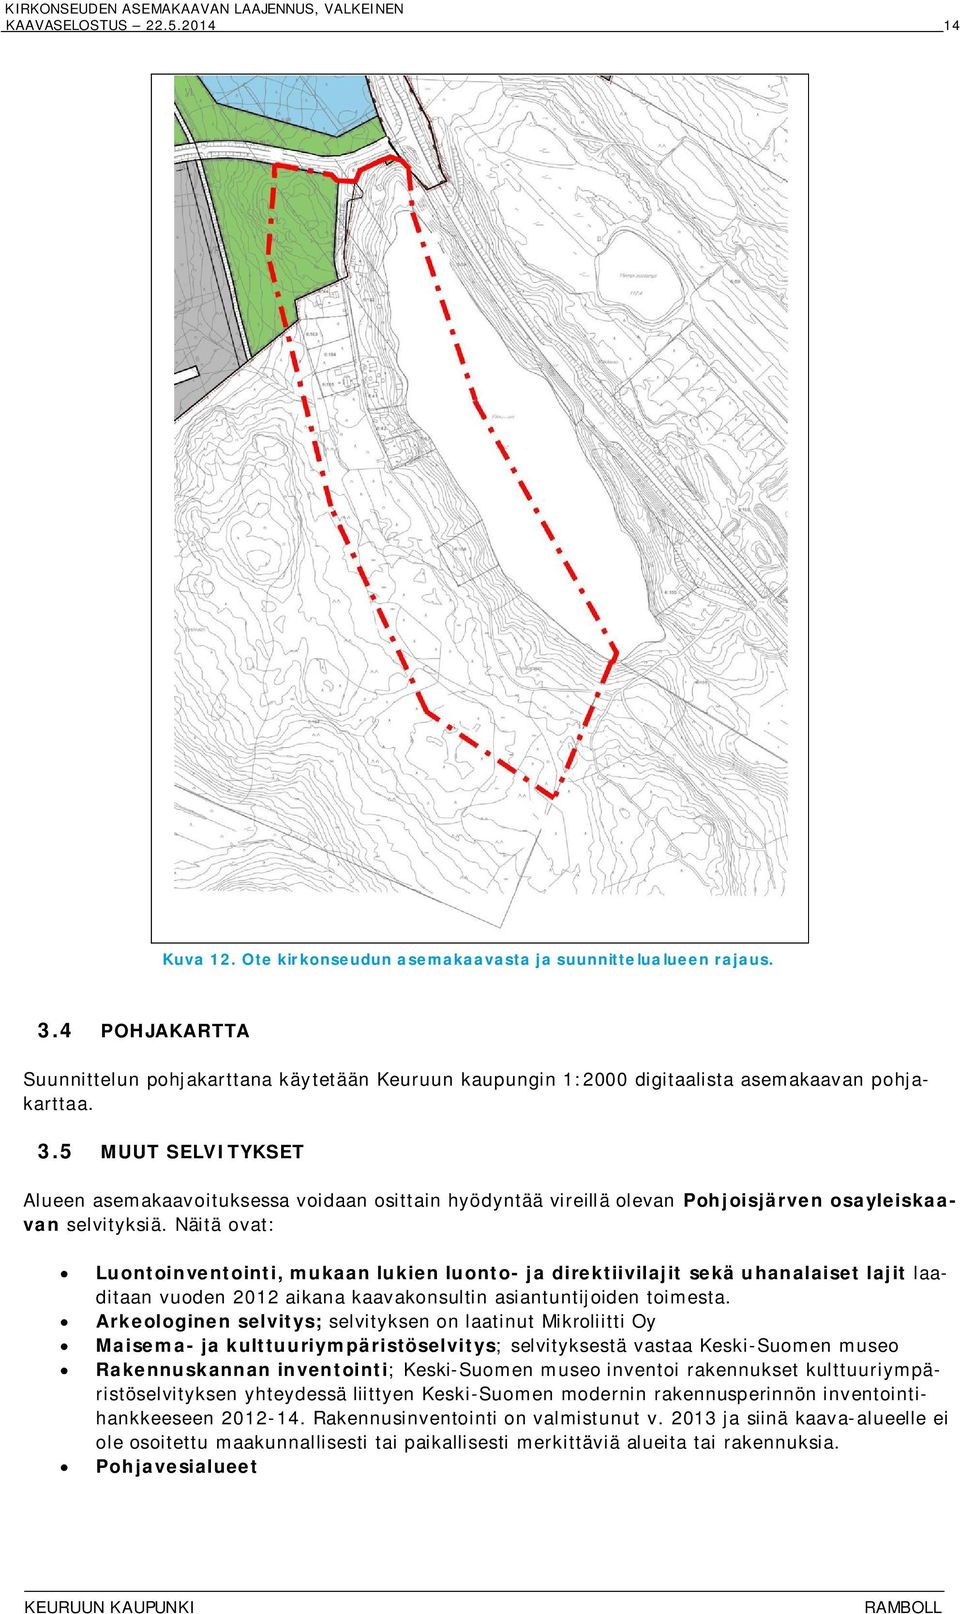 5 MUUT SELVITYKSET Alueen asemakaavoituksessa voidaan osittain hyödyntää vireillä olevan Pohjoisjärven osayleiskaavan selvityksiä.